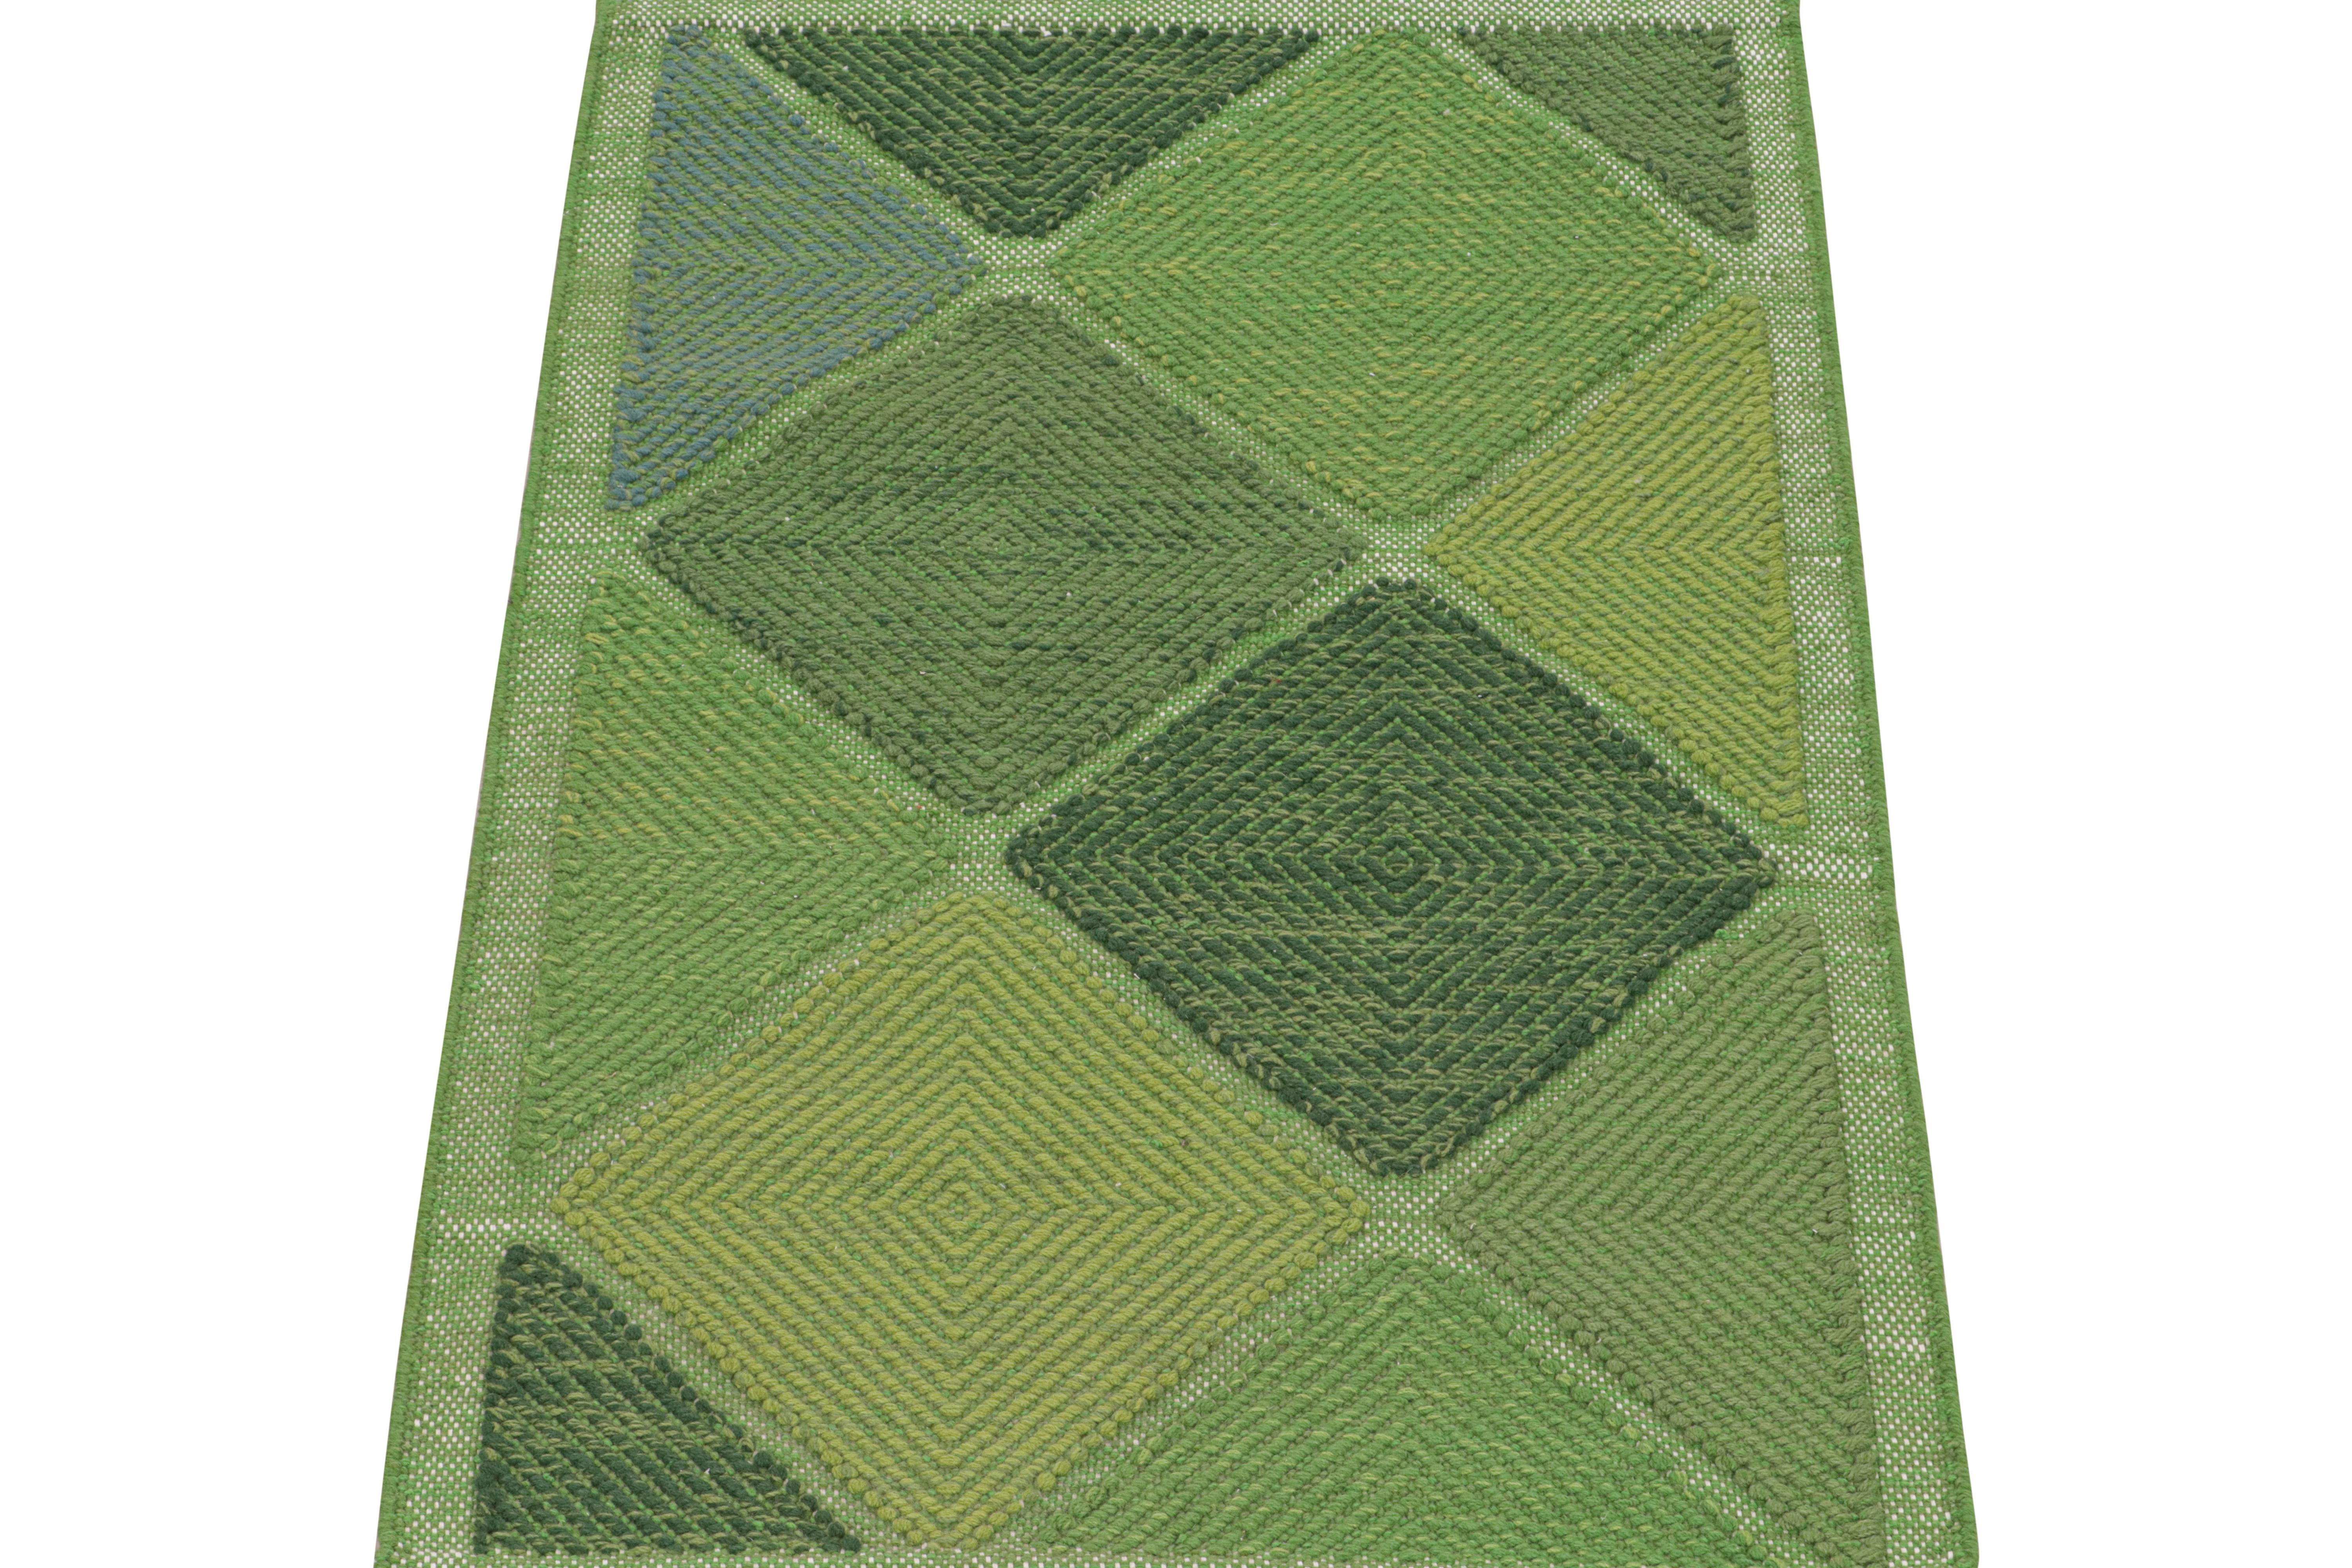 Dieser 3x5 Flachgewebe-Teppich ist ein Neuzugang in der skandinavischen Kilim-Kollektion von Rug & Kilim. Das aus Wolle und natürlichen Garnen handgewebte Design spiegelt eine zeitgenössische Interpretation des Rollakans aus der Mitte des